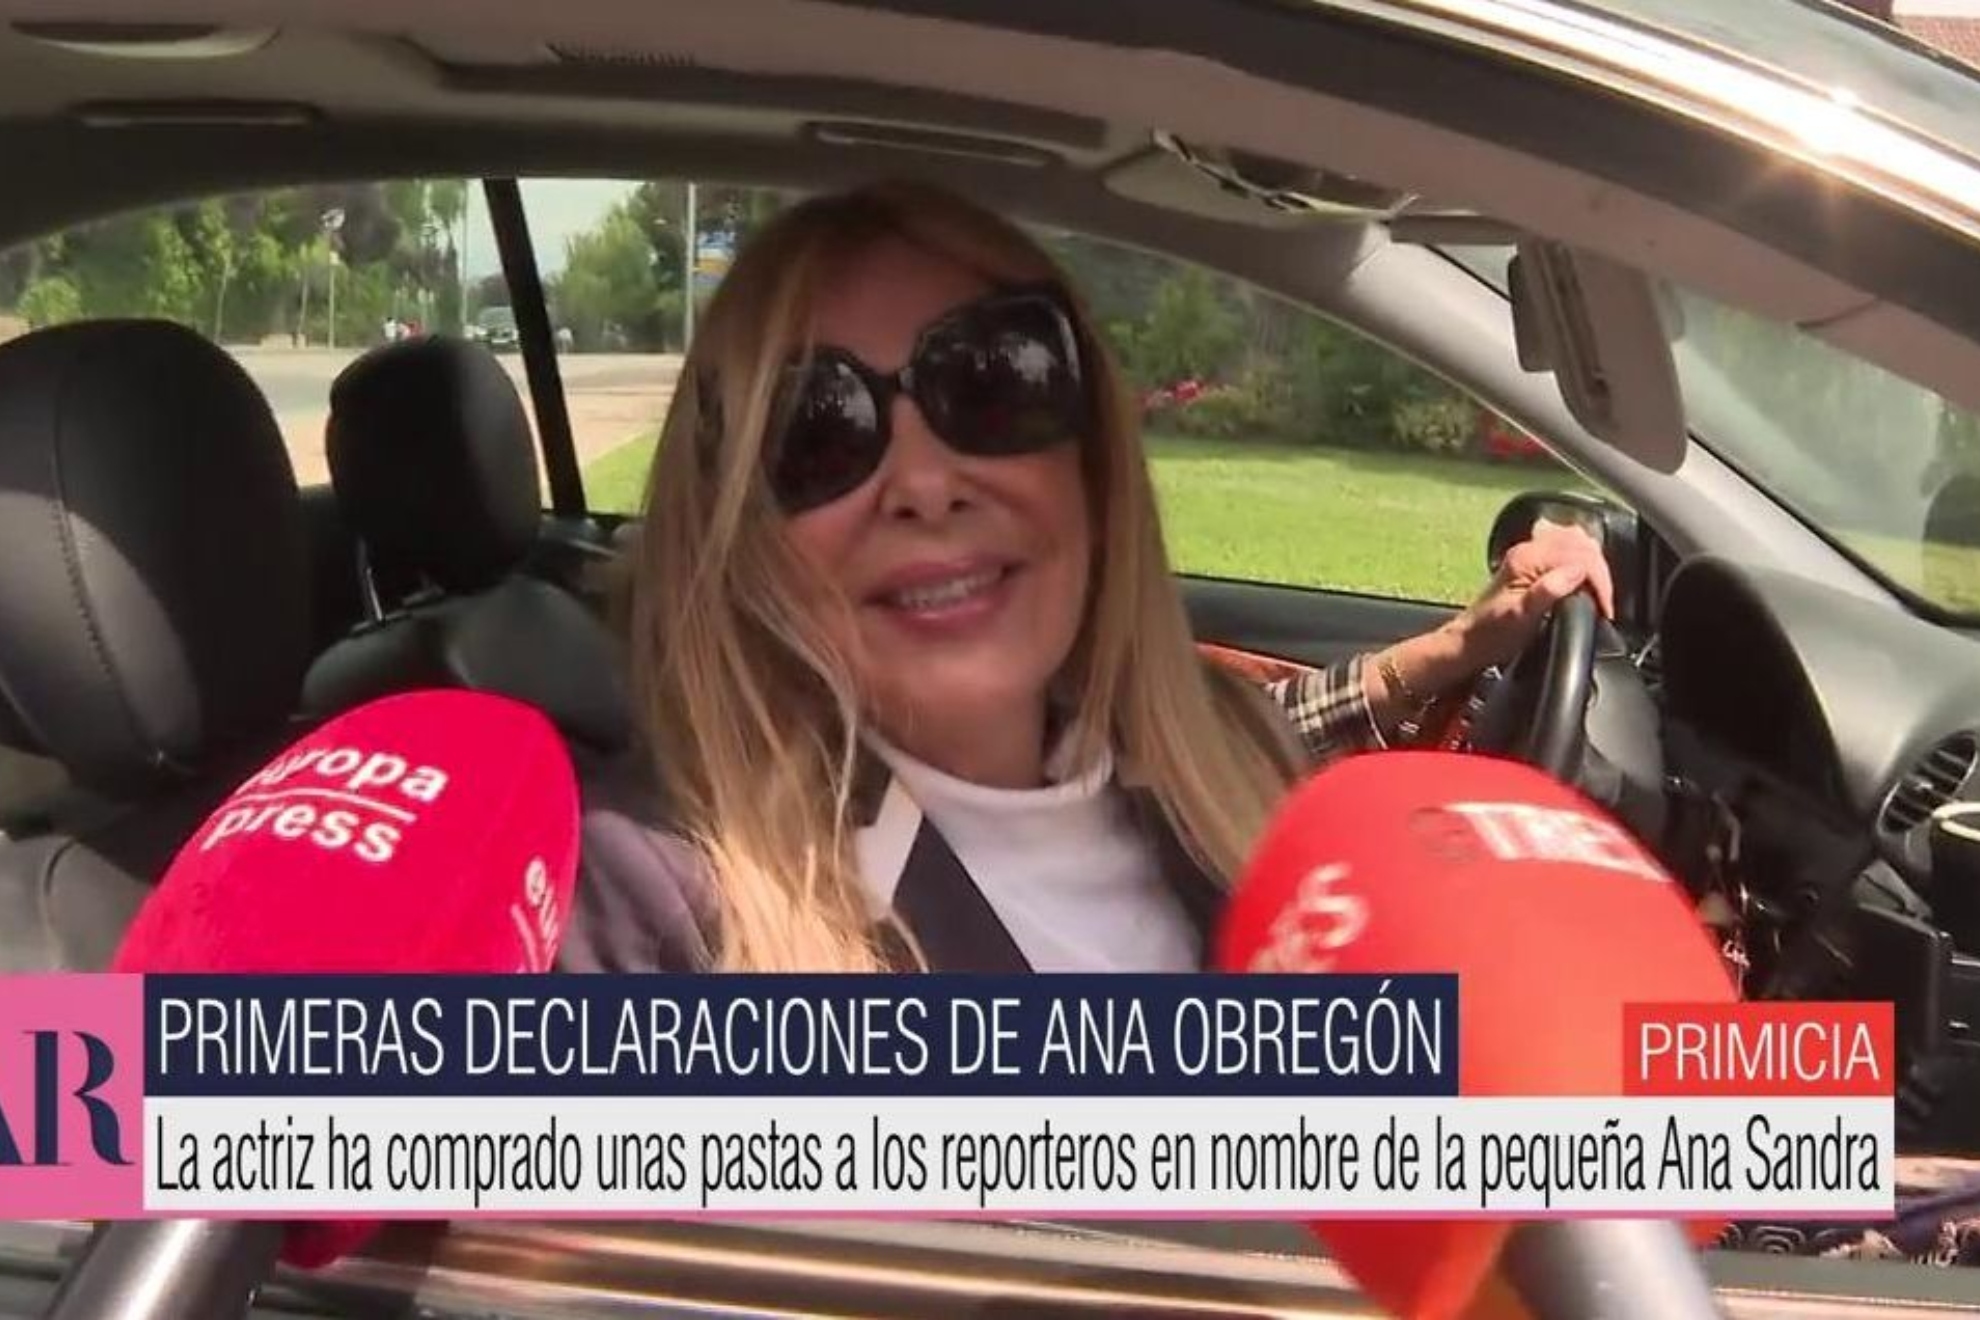 Ana Obregón invita a Alessandro Lequio a conocer a su nieta: "Tiene las puertas abiertas".